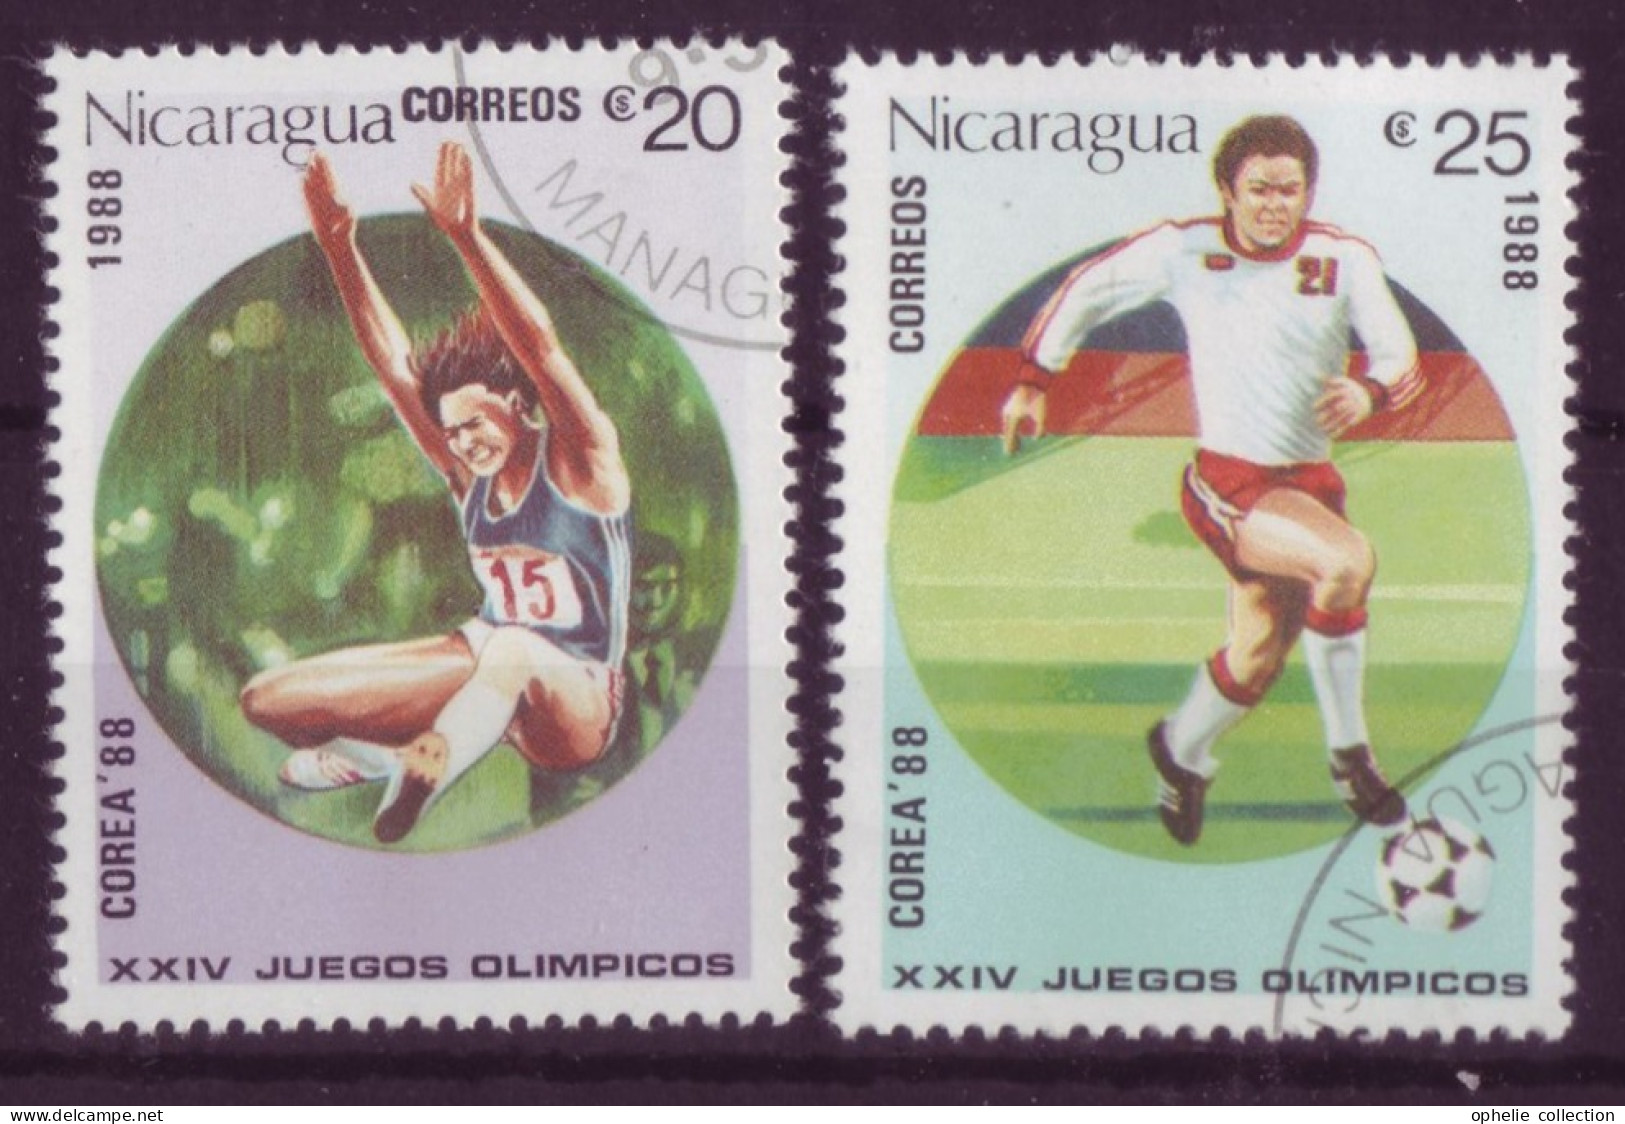 Amérique - Nicaragua - Correa'88 - XXIII° Juegos Olimpicos Atena 2004 - 2 Timbres Différents - 6525 - Nicaragua